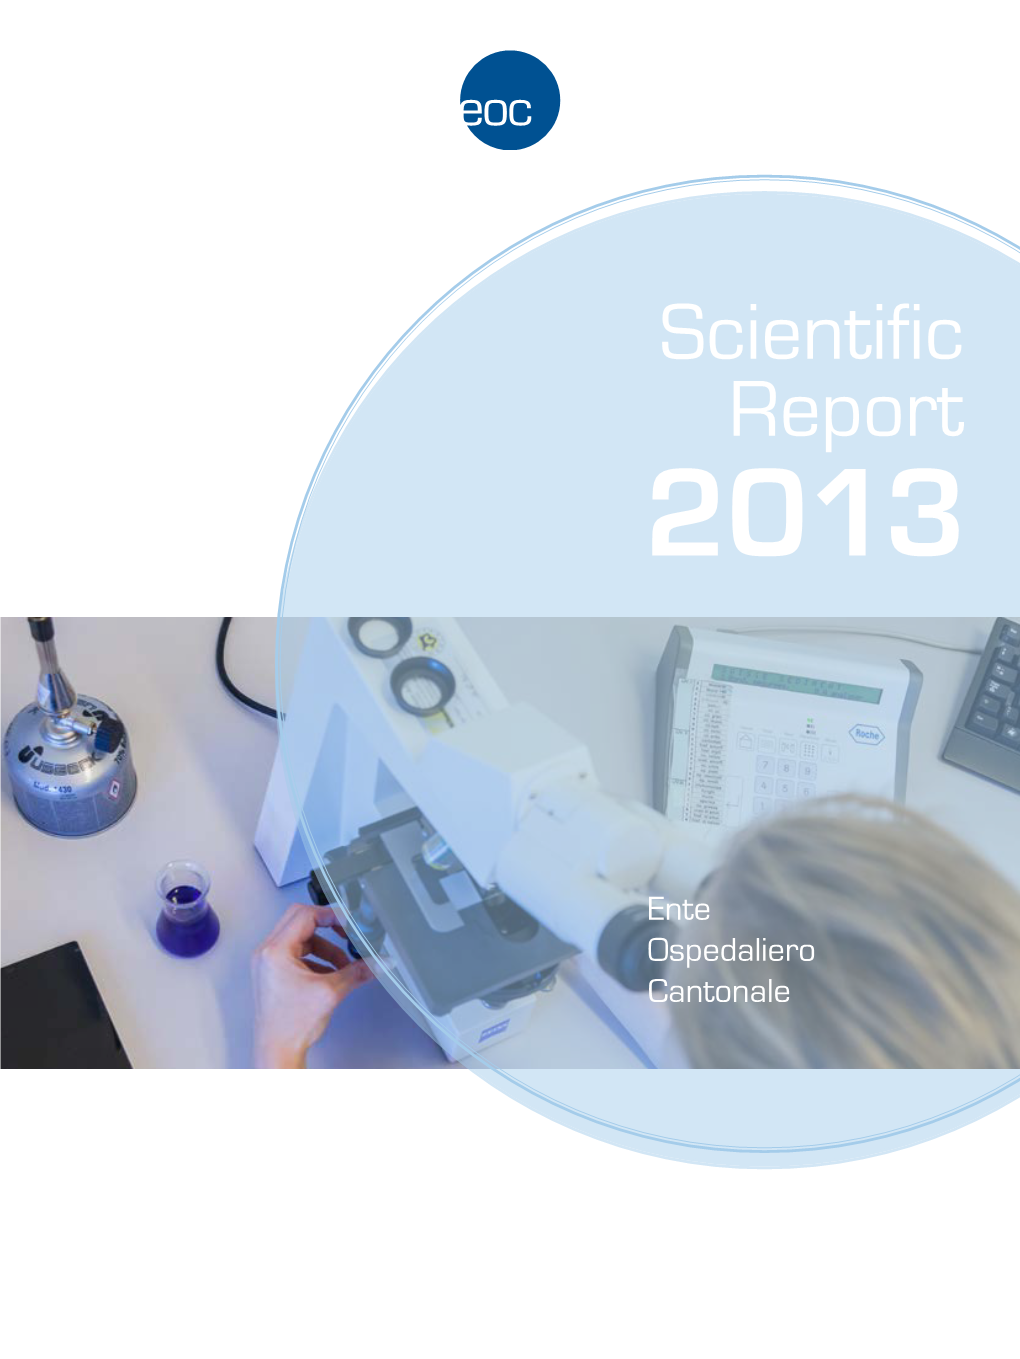 Scientific Report 2013